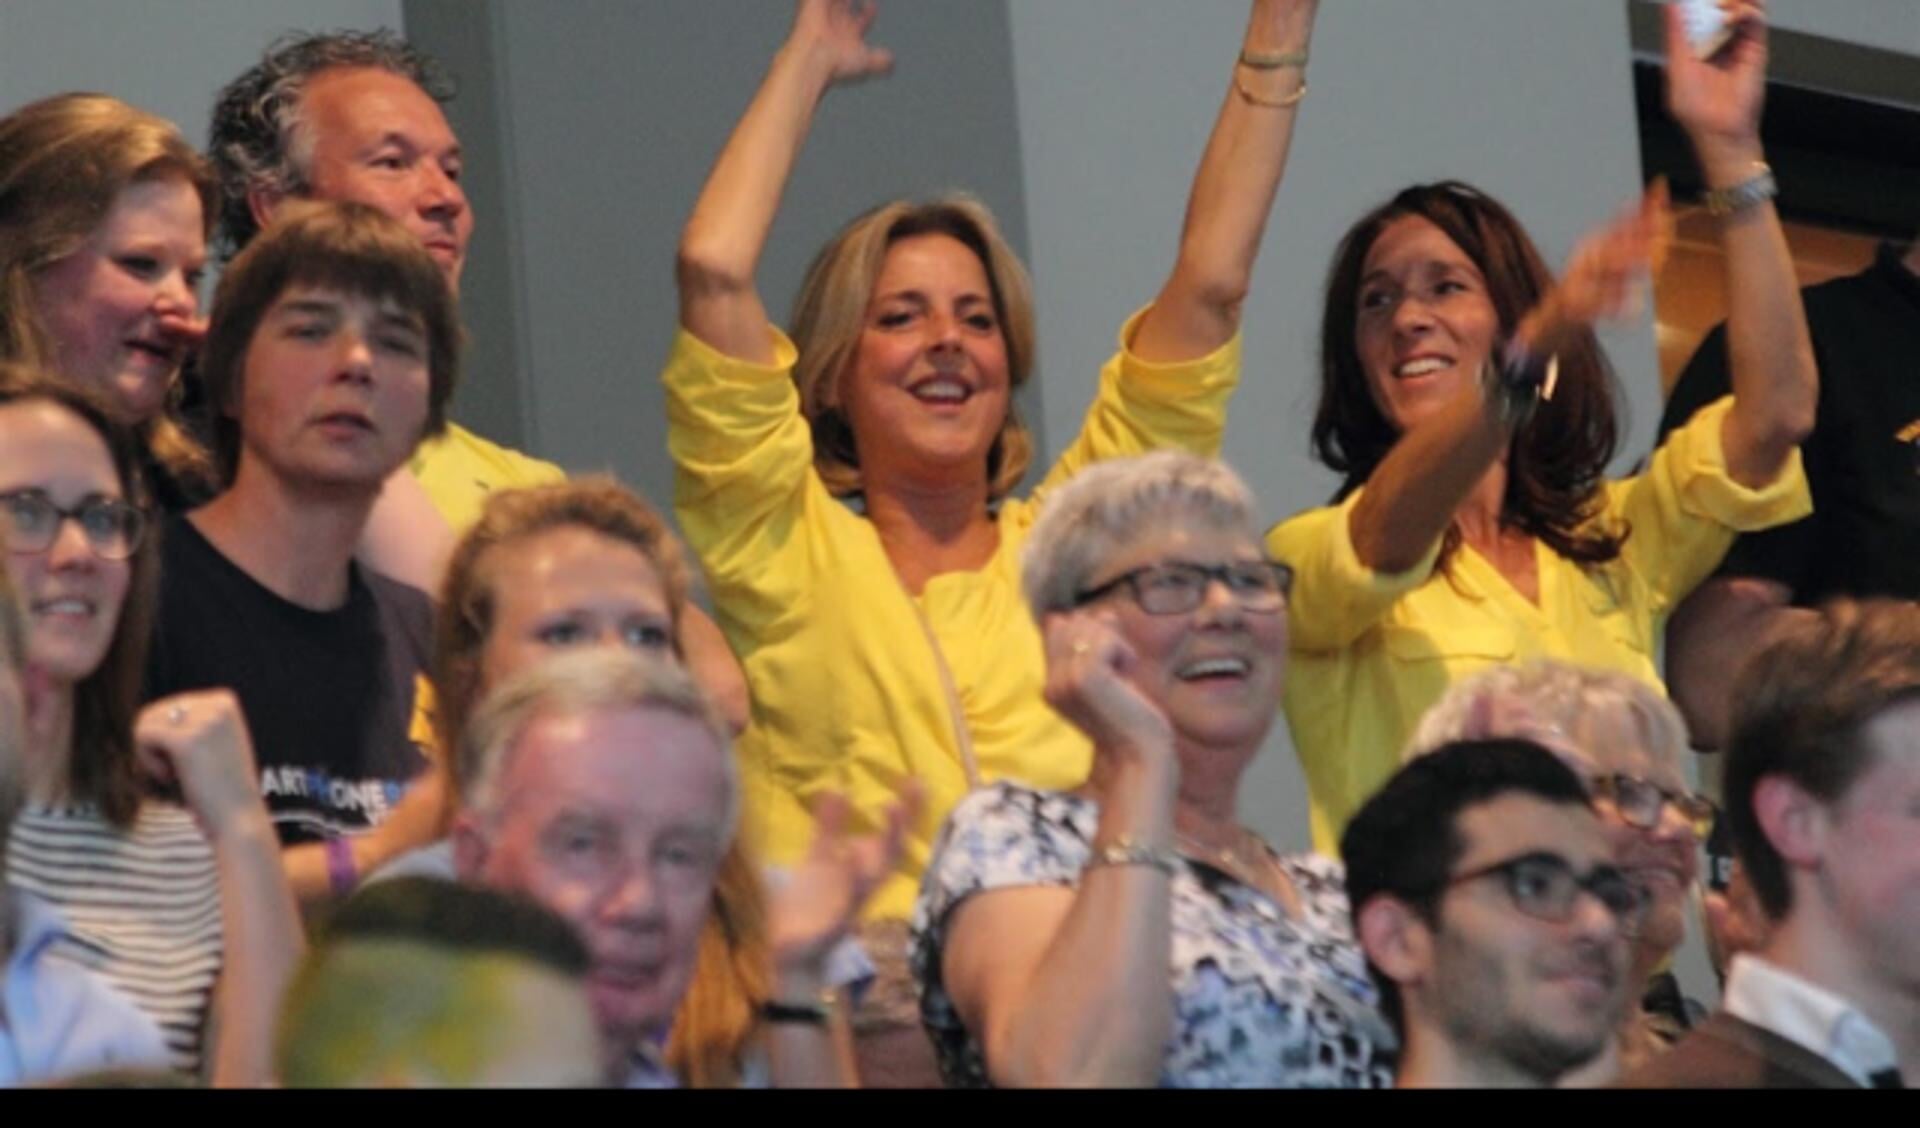 Micky Kunz (rechts in geel shirt): ,,Ik ben geen supporter die schreeuwt, meer eentje die geniet van de sfeer en de mensen.''